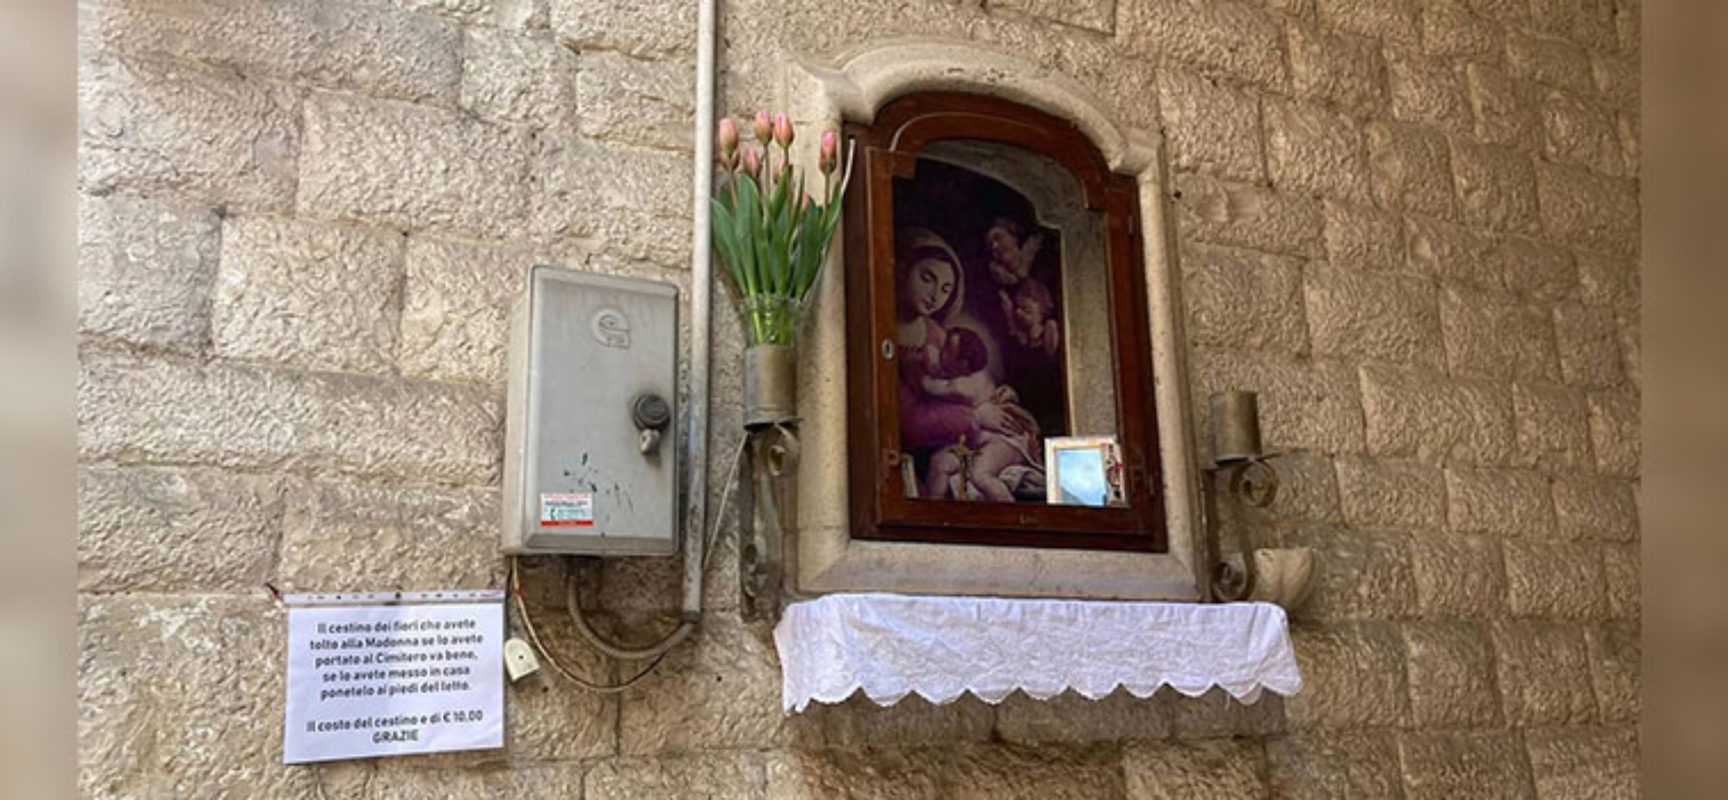 Rubano fiori alla Madonna, messaggio dei residenti ai ladri